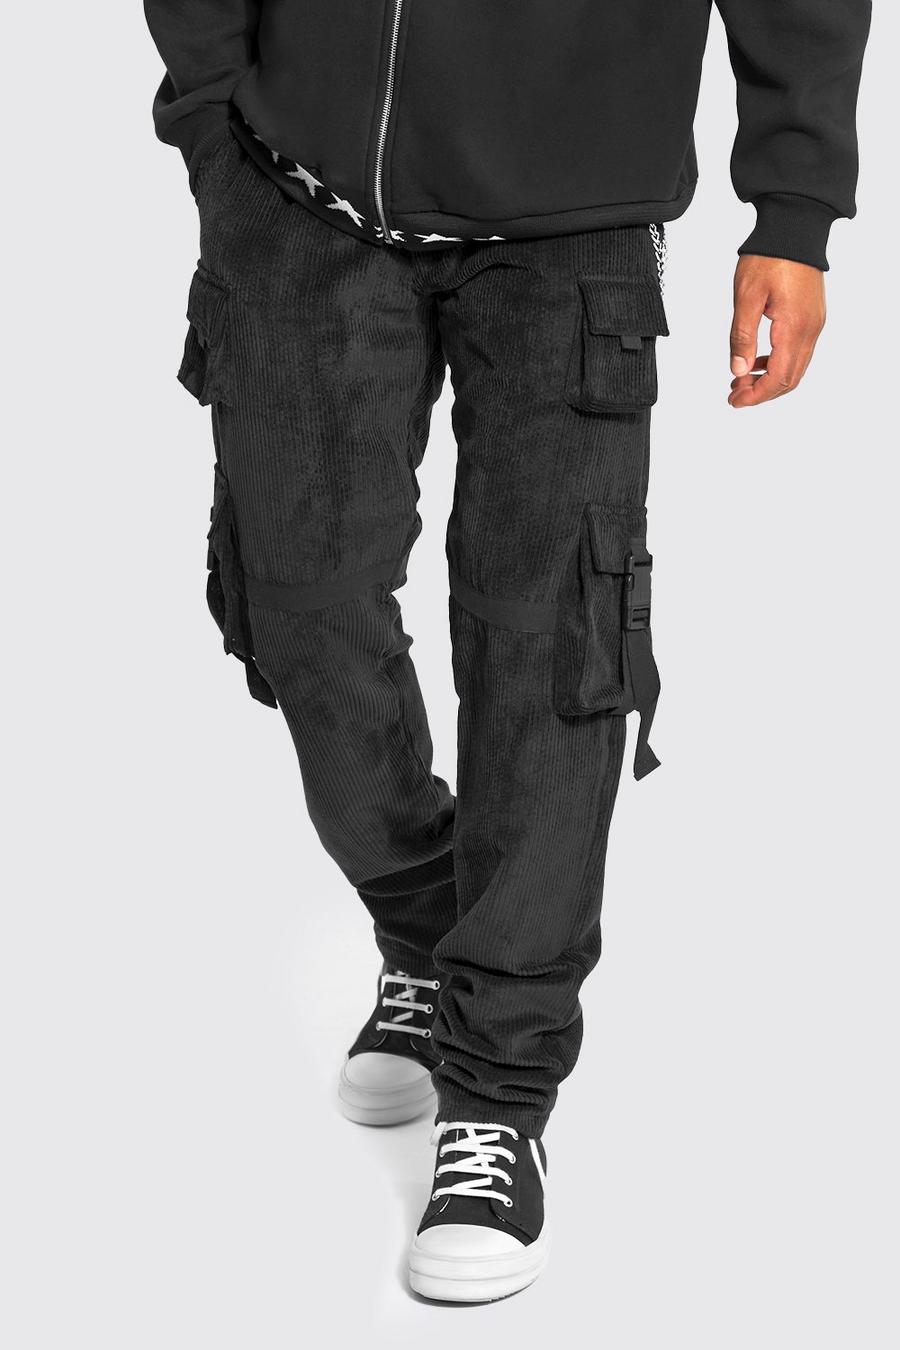 Pantaloni Cargo Tall stile Utility in velluto a coste con catena, Black negro